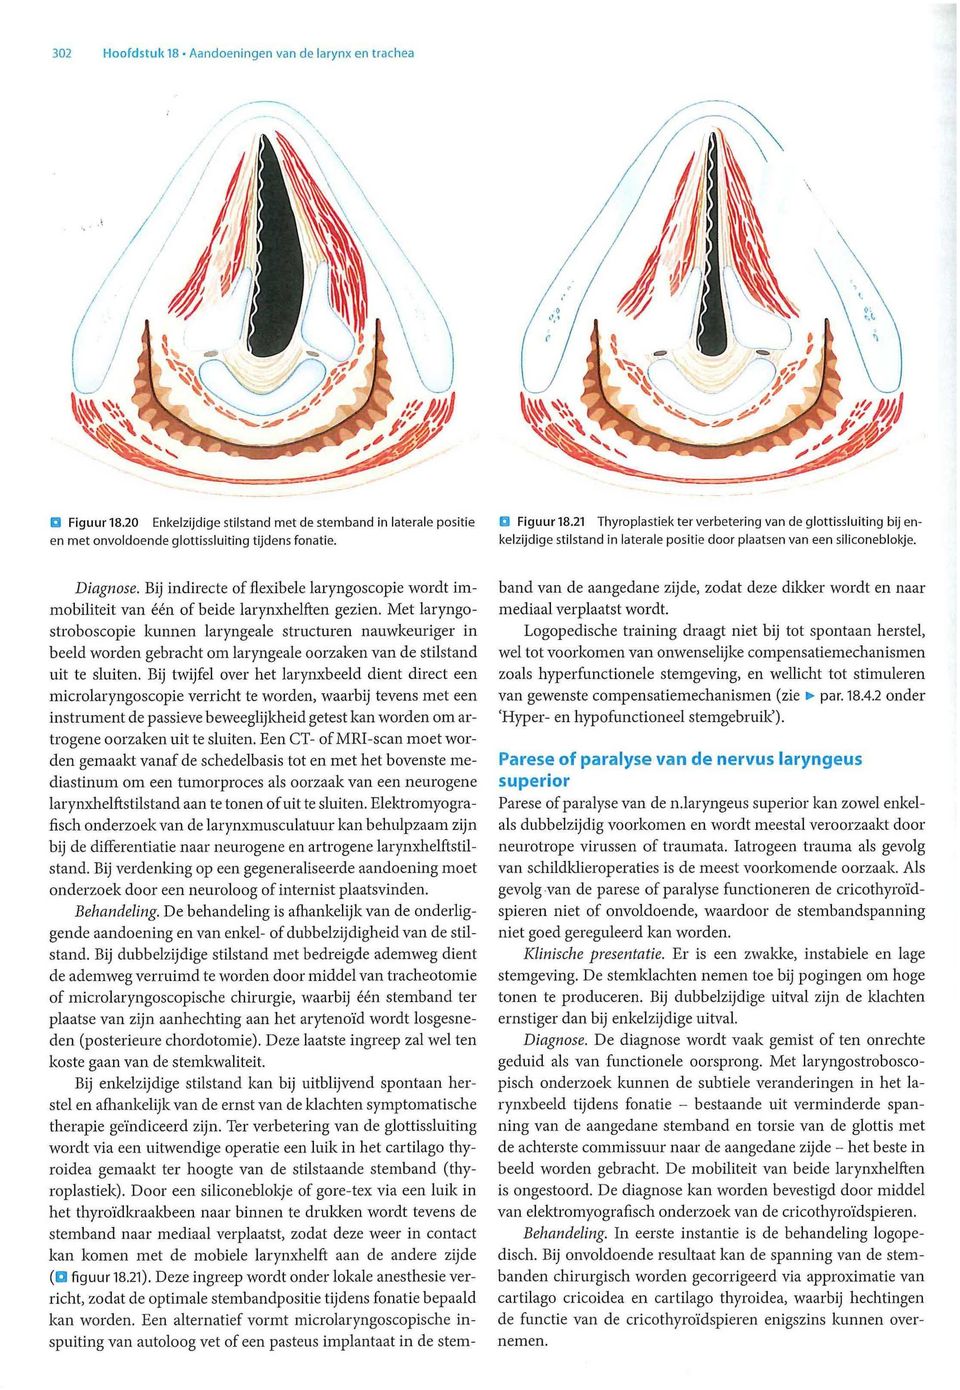 Met laryngostroboscopie kunnen laryngeale structuren nauwkeuriger in beeld worden gebracht om laryngeale oorzaken van de stilstand uit te sluiten.